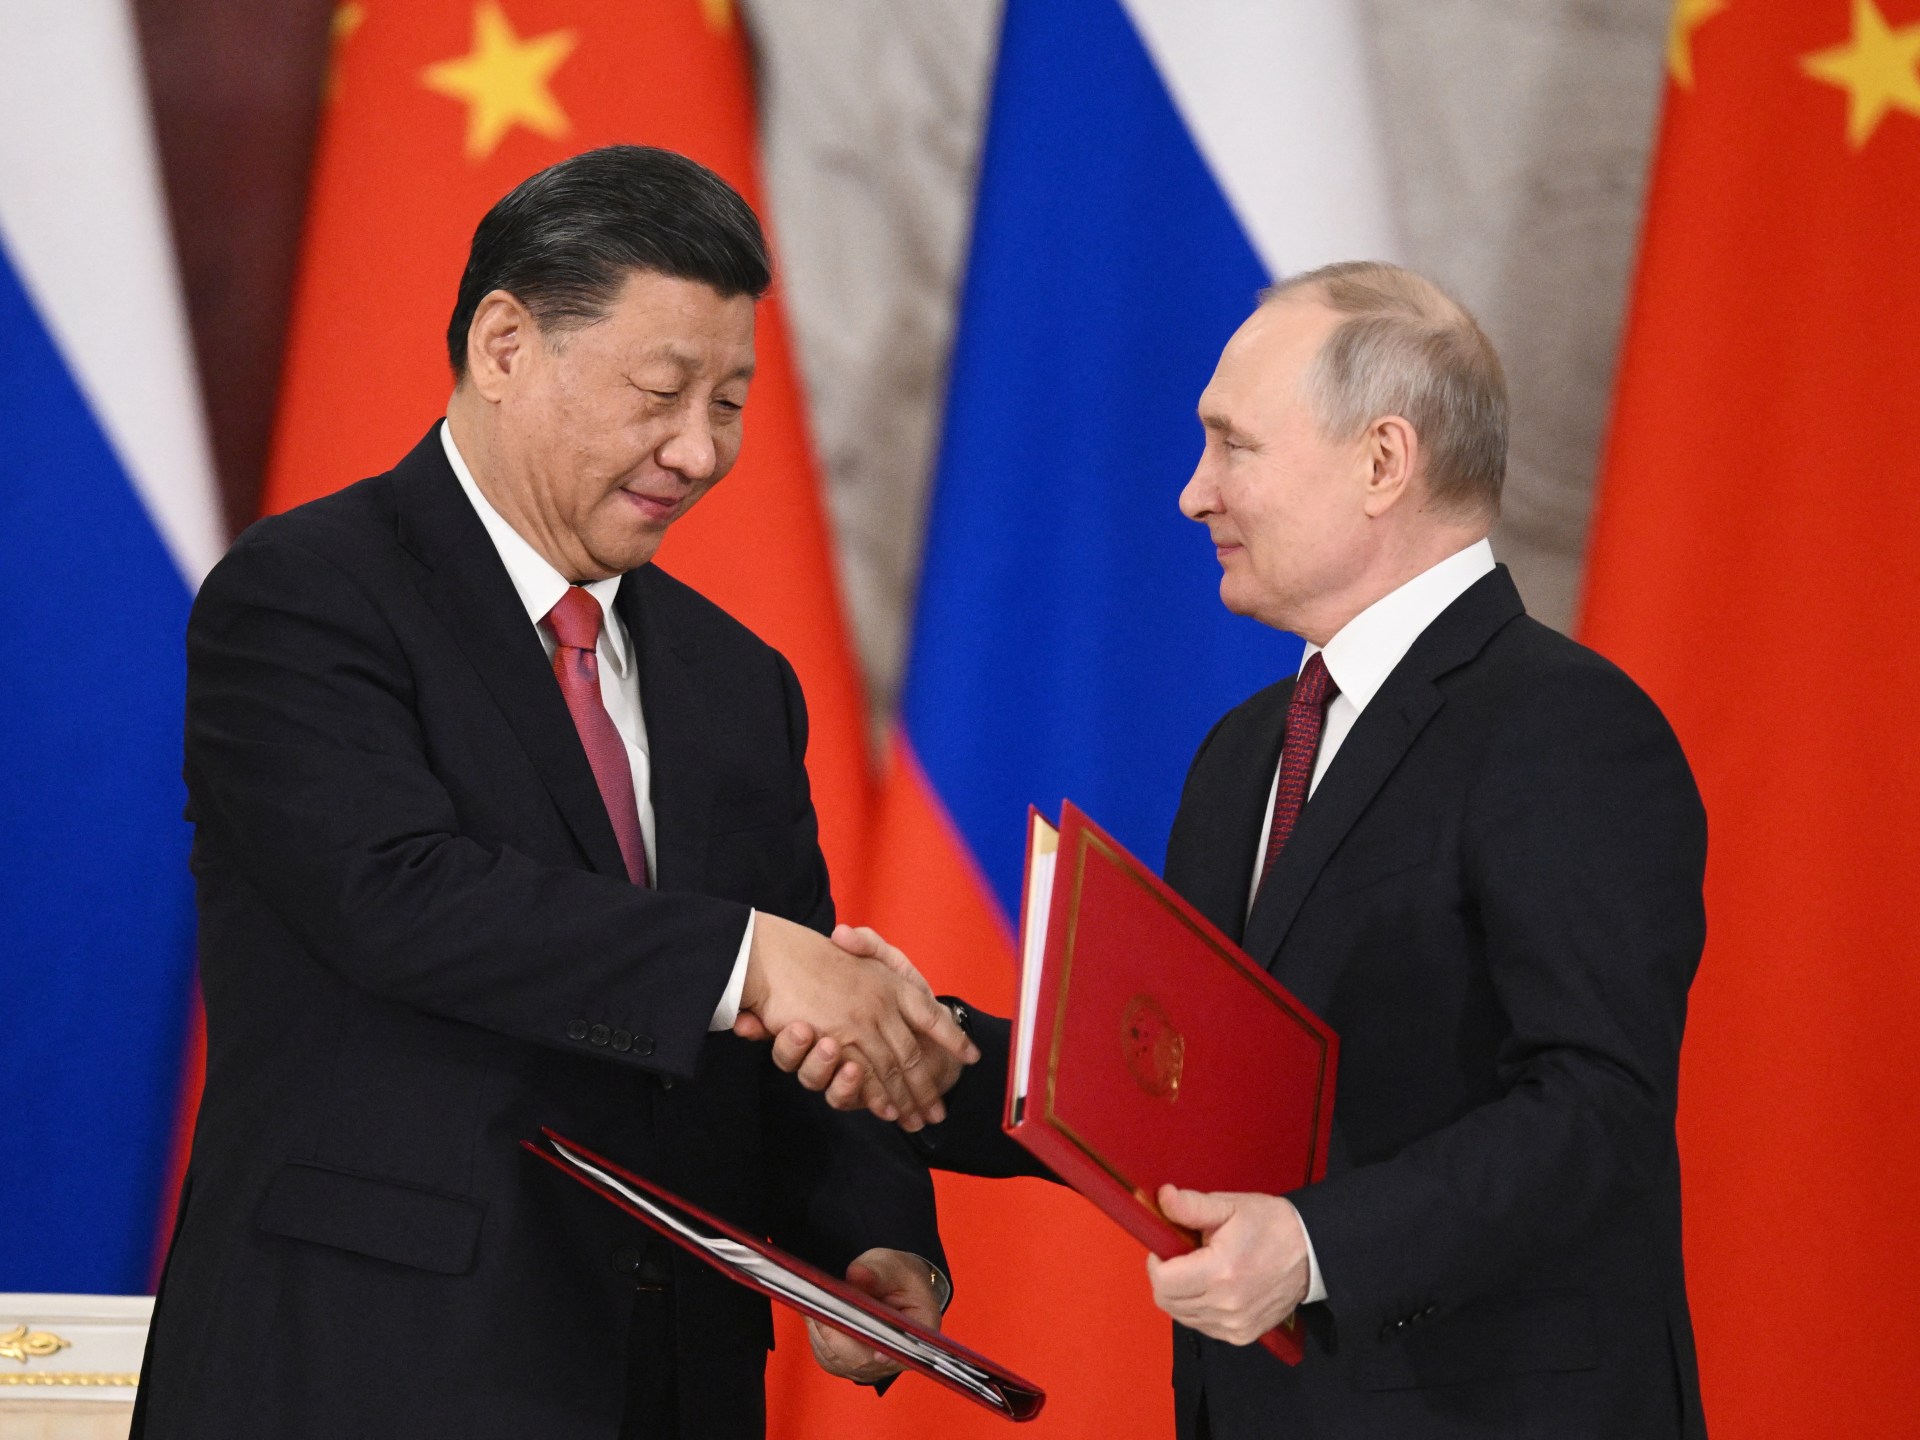 Le relazioni russo-cinesi entrano in una “nuova era” con l’incontro di Xi con Putin a Mosca |  Notizia